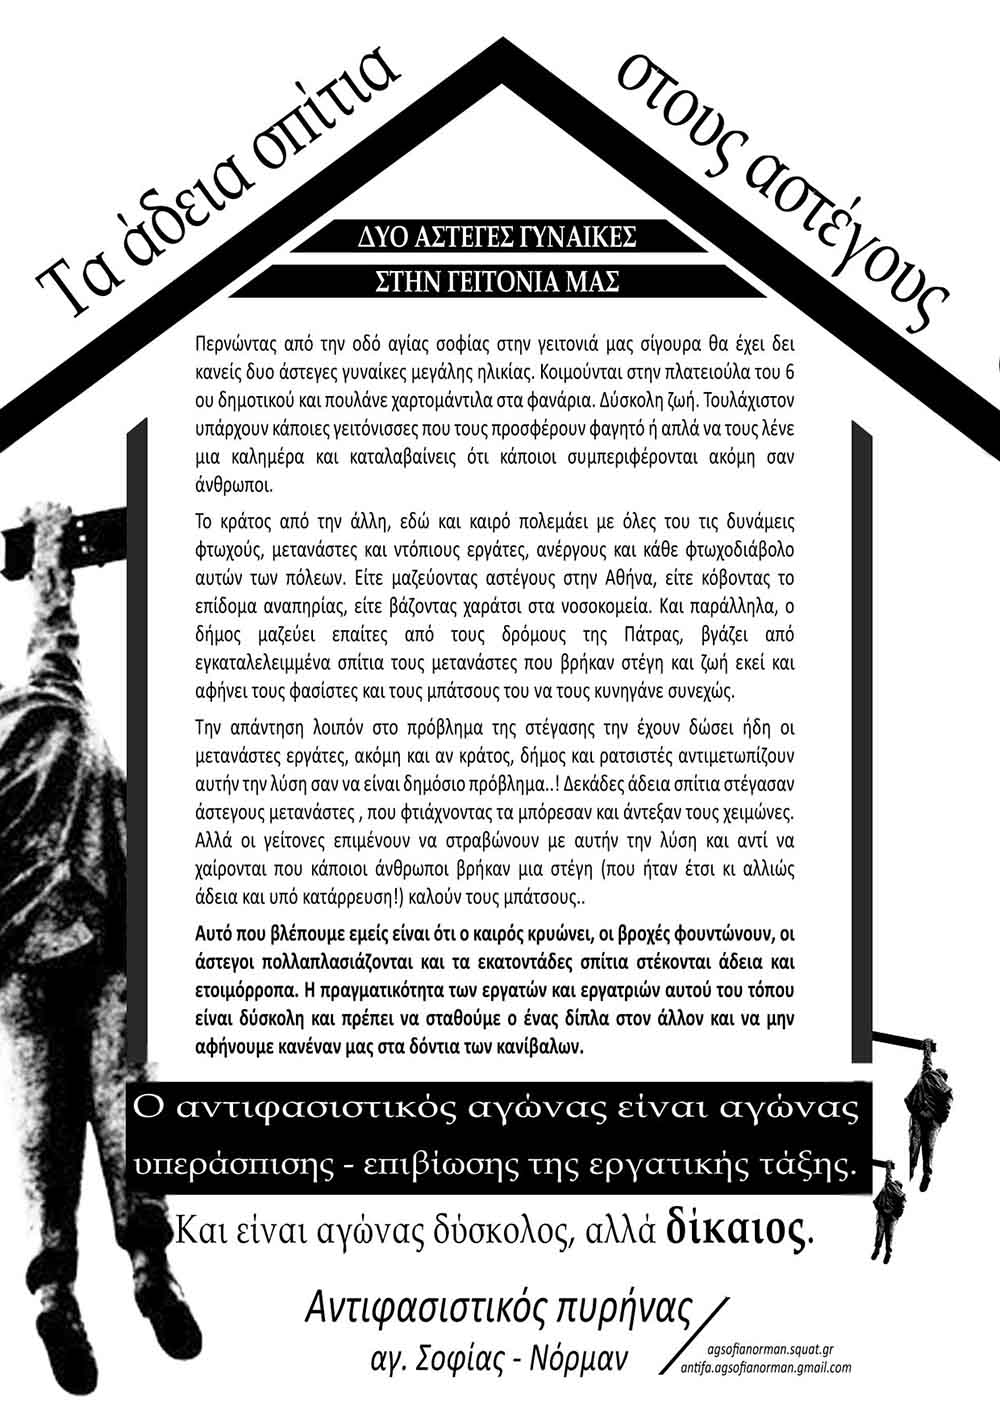 Αντιφασιστικός Πυρήνας Αγ.Σοφίας – Νόρμαν, Πάτρα: Αφίσα Για Τις Άστεγες Γυναίκες Στην Γειτονιά Μας